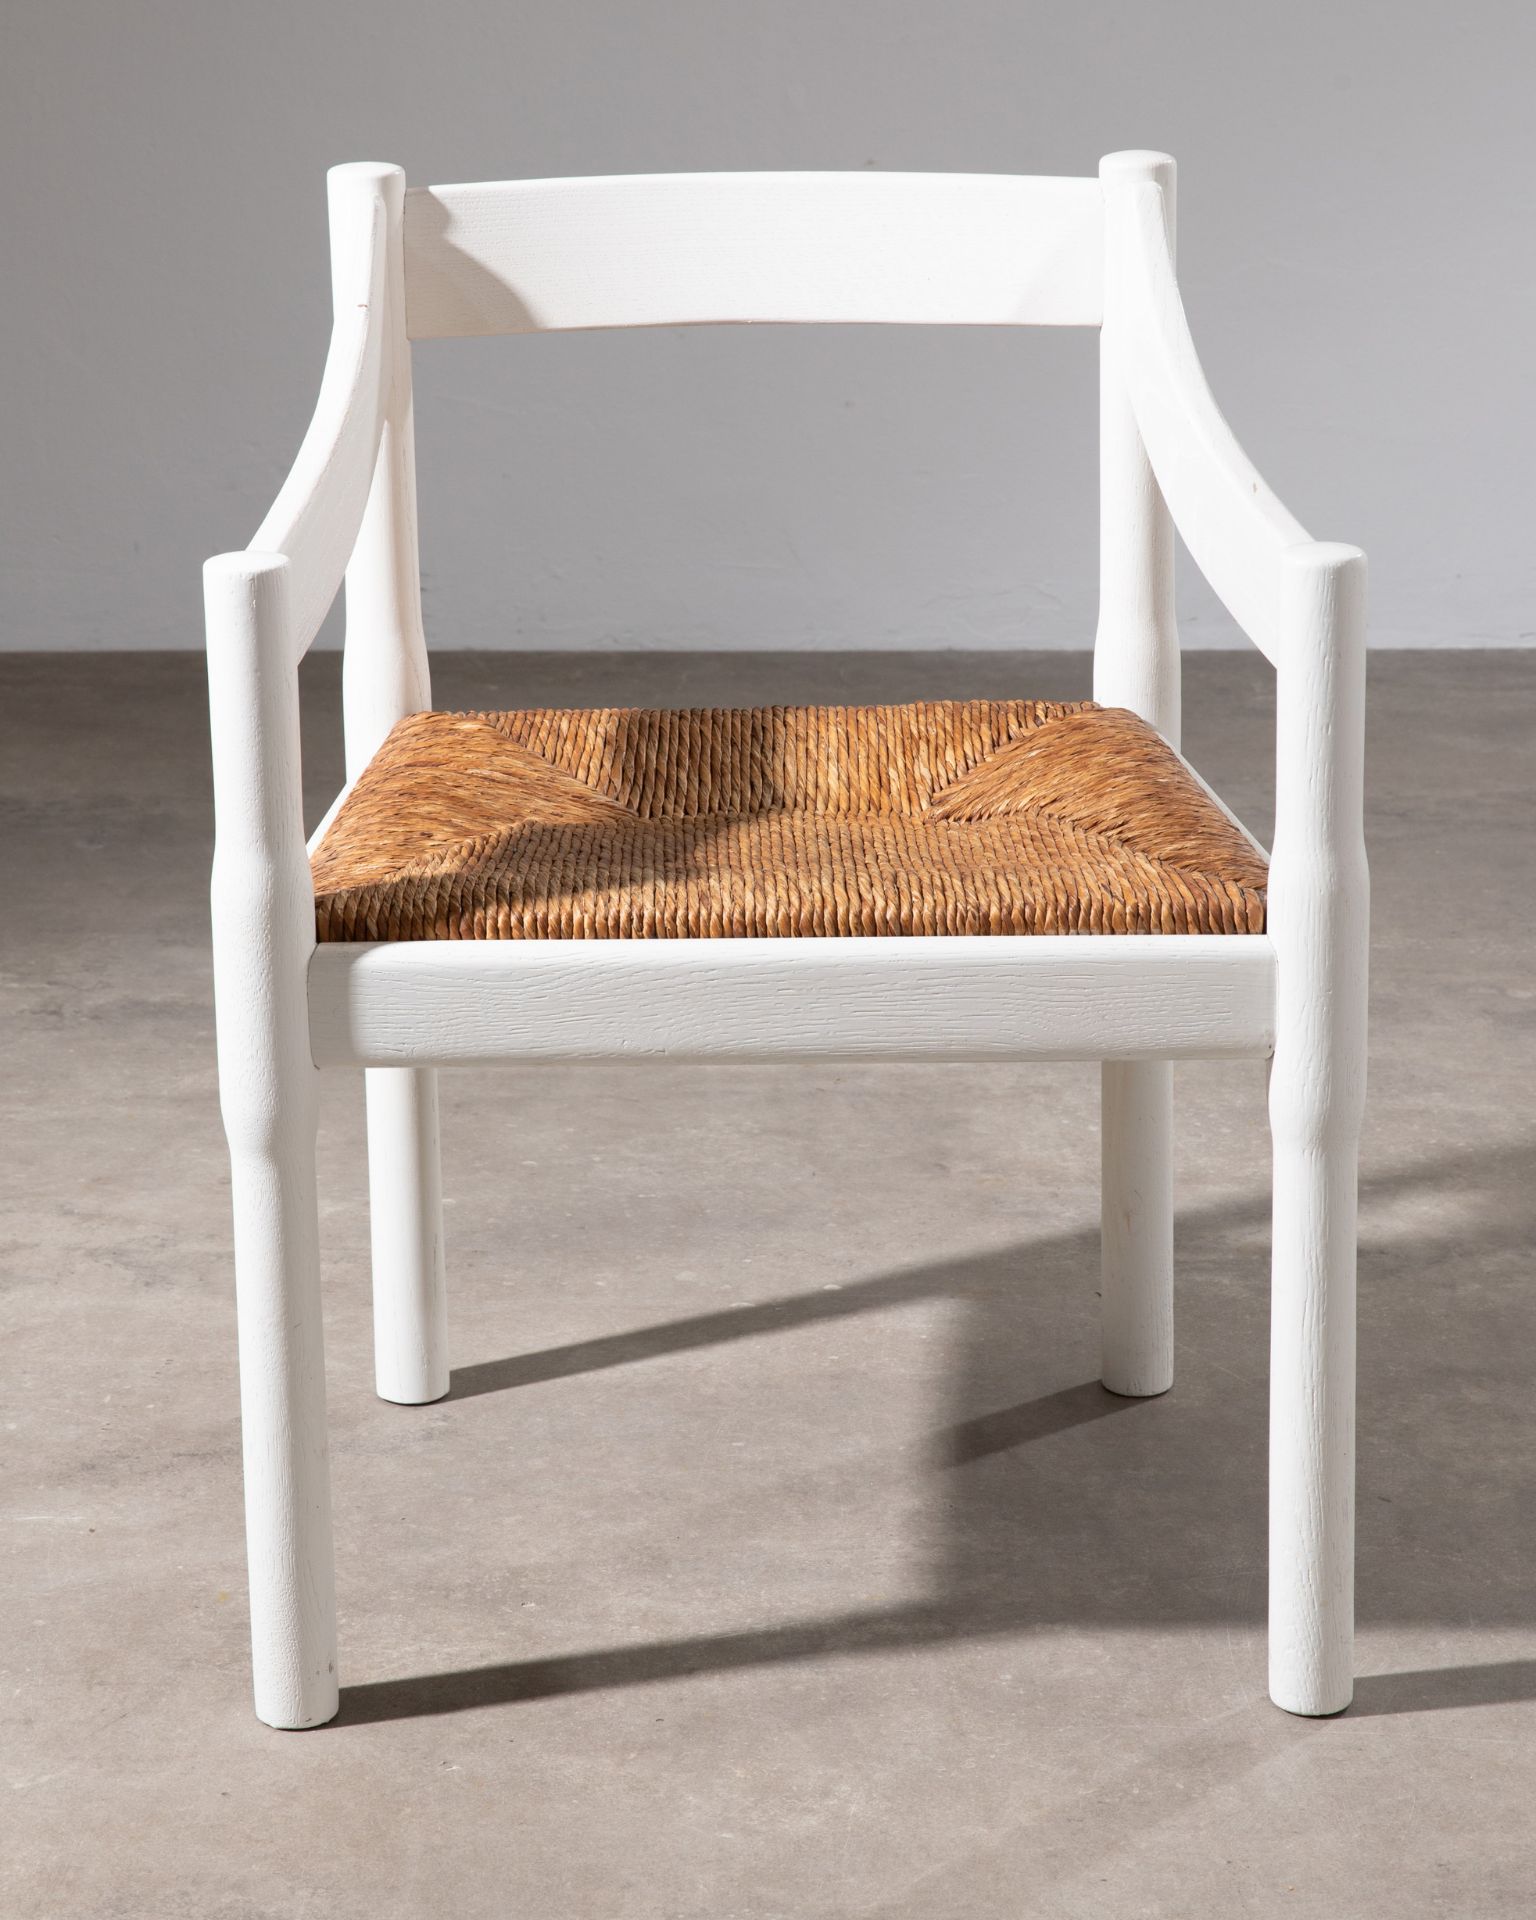 Vico Magistretti, Cassina, 6 Stühle Modell Carimate - Bild 3 aus 6